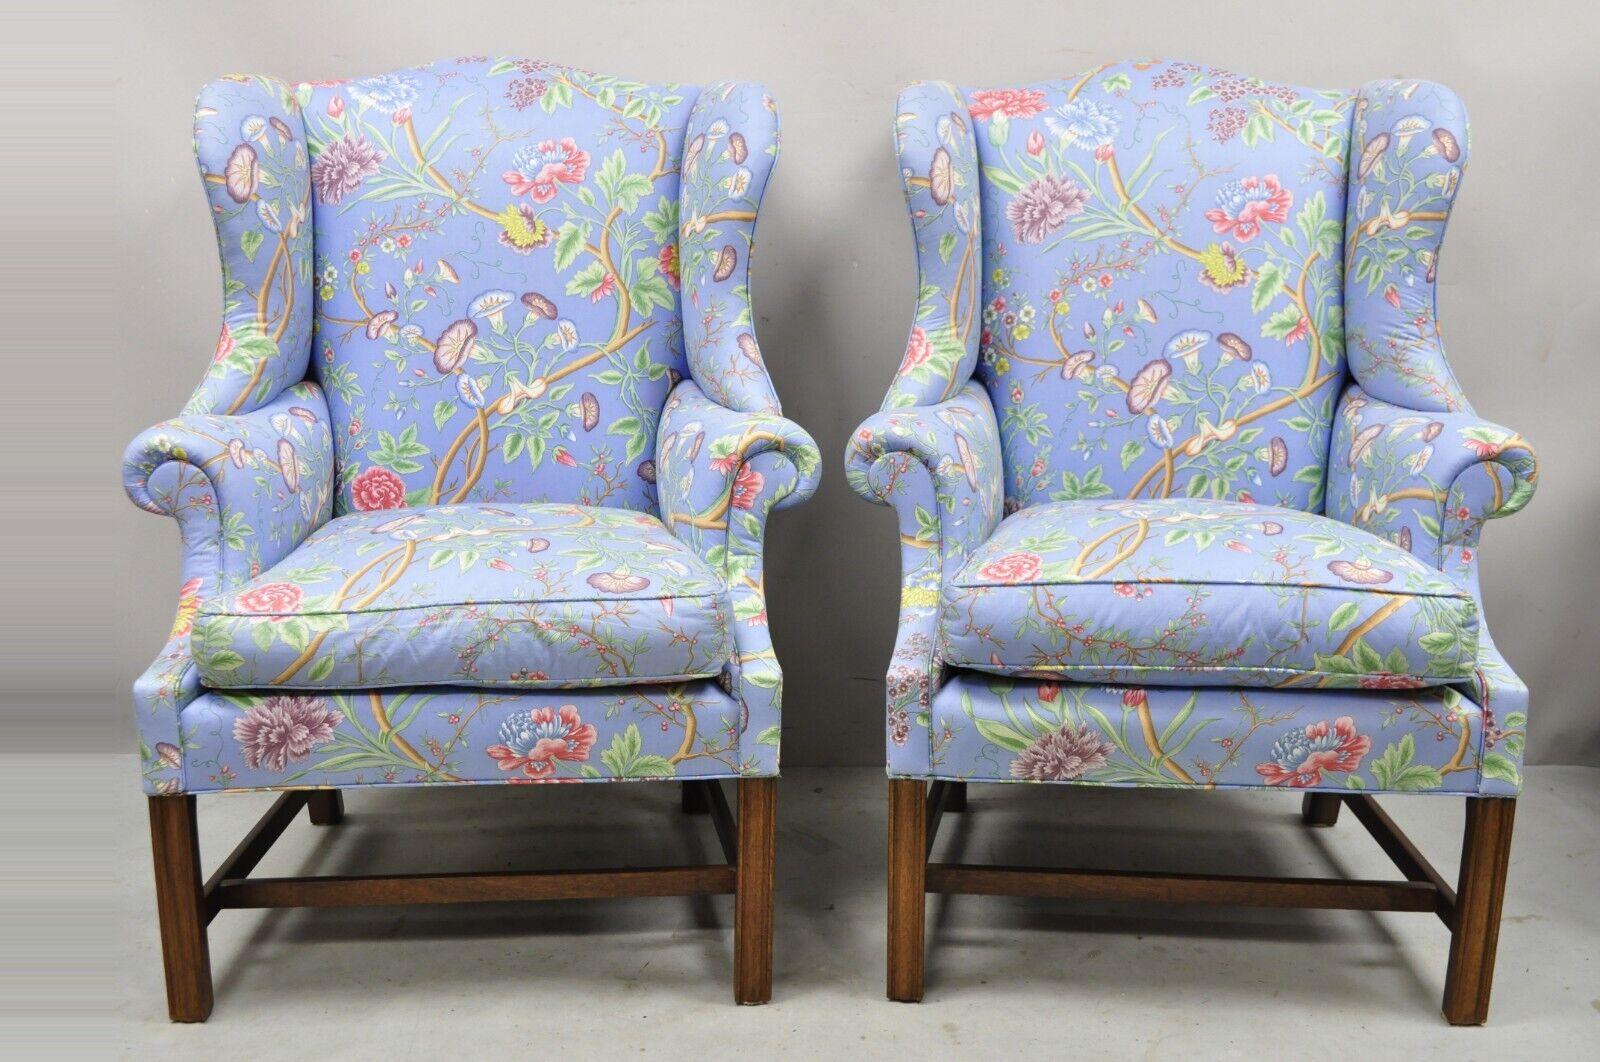 Paire de chaises anglaises de style édouardien en acajou à fleurs bleues. Cet article se caractérise par des accoudoirs roulés et des dossiers ailés, une tapisserie à motifs floraux bleus, une base en forme de civière, des cadres en bois massif, une